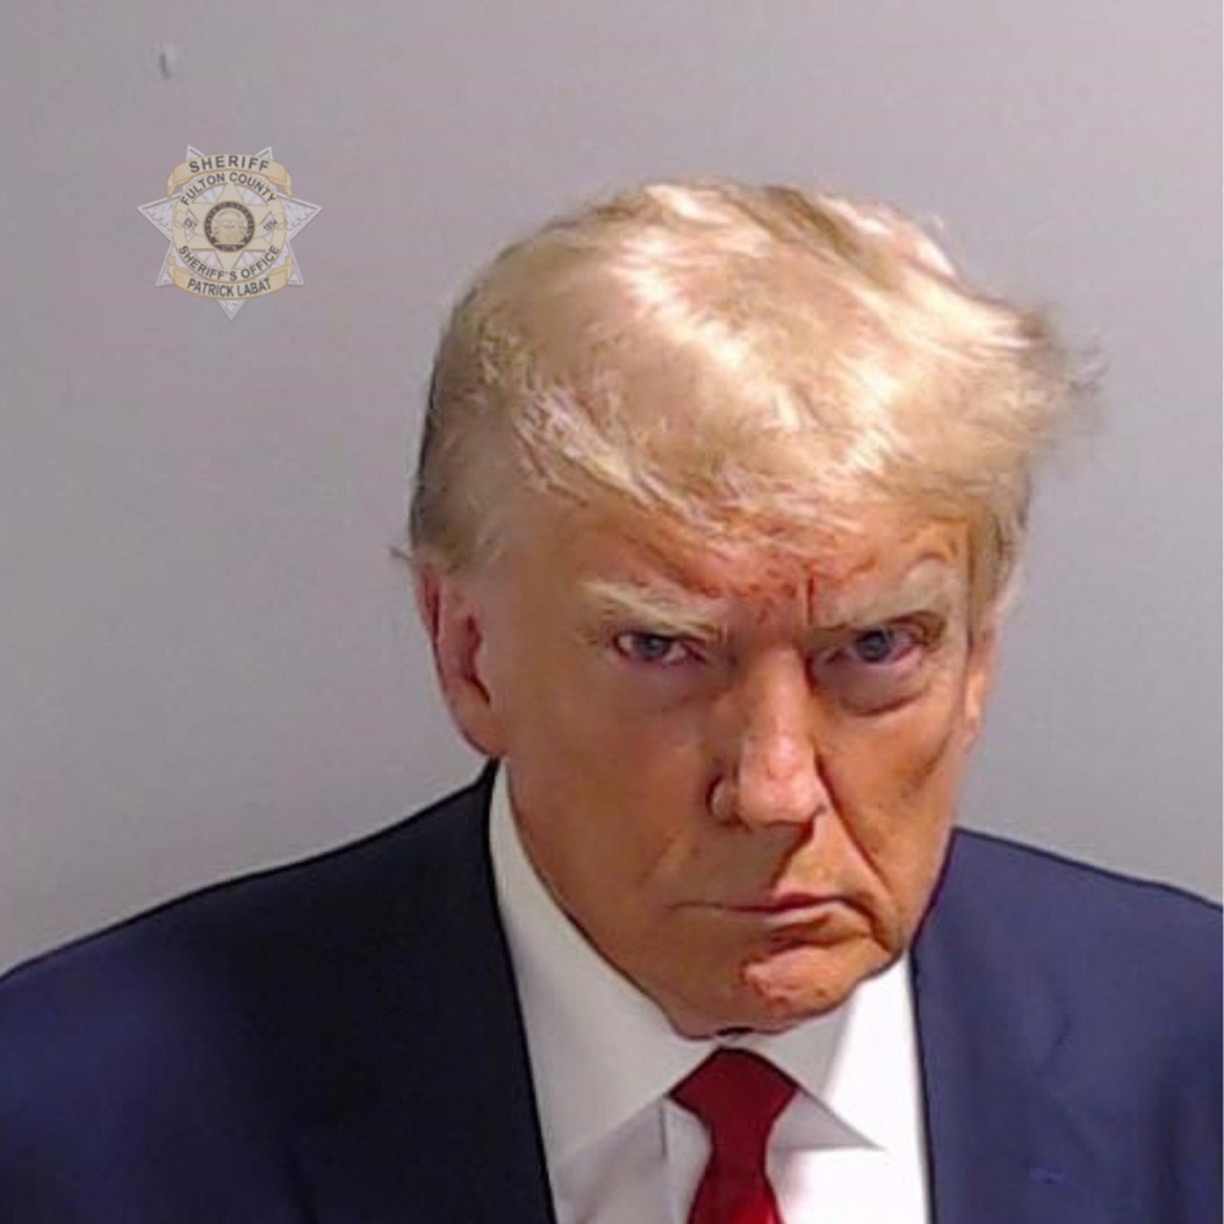 O ex-presidente dos EUA, Donald Trump, se apresentou nesta quinta-feira (24) à Justiça em uma prisão do condado de Fulton, na Geórgia